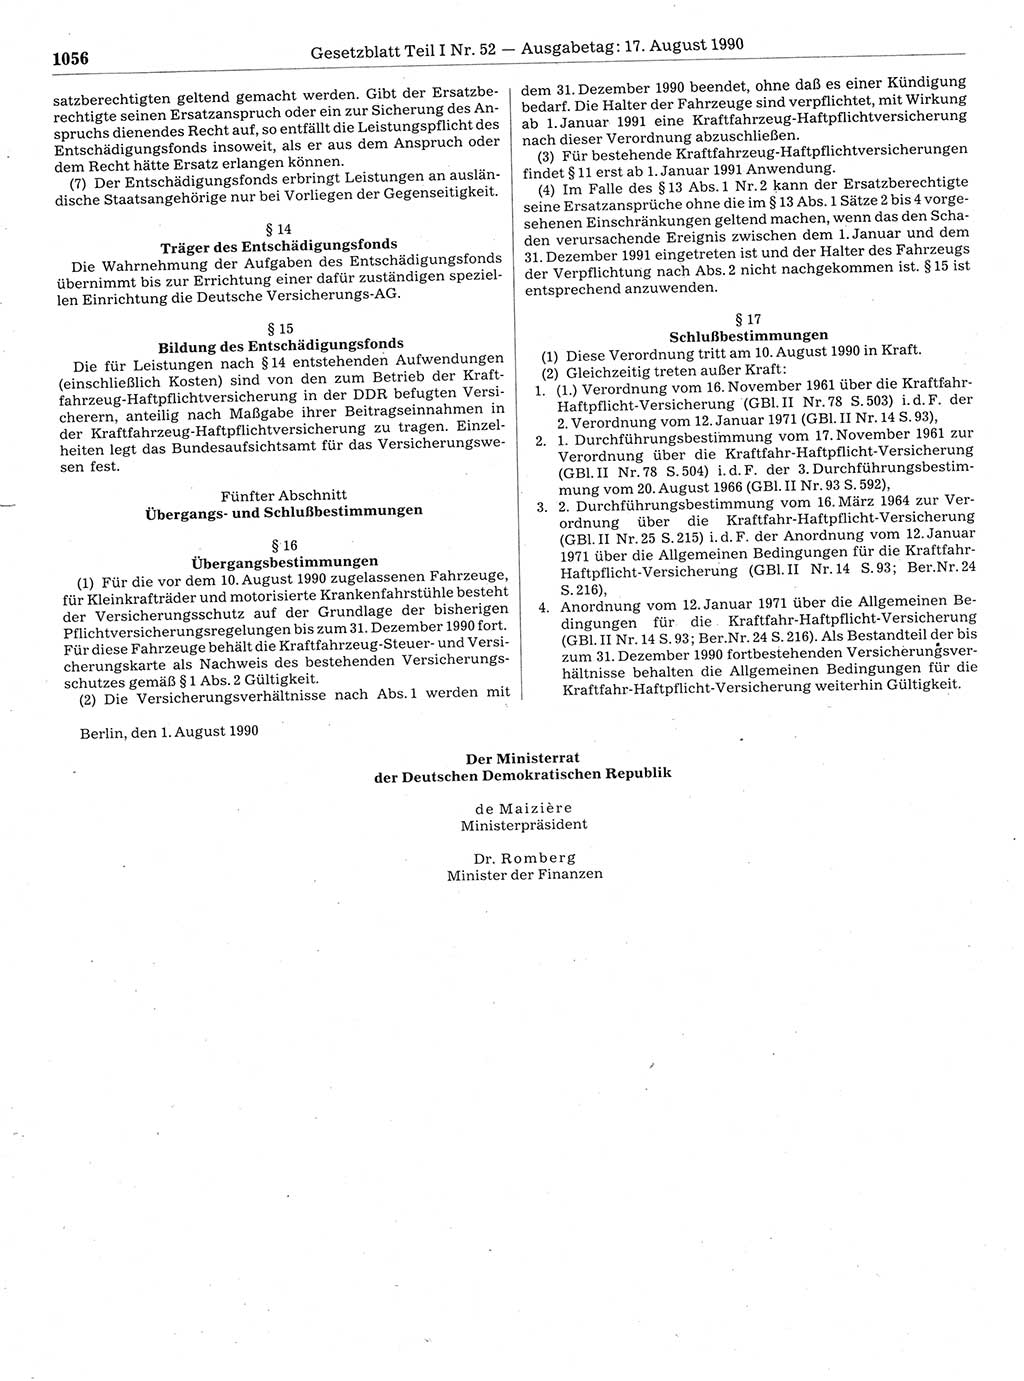 Gesetzblatt (GBl.) der Deutschen Demokratischen Republik (DDR) Teil Ⅰ 1990, Seite 1056 (GBl. DDR Ⅰ 1990, S. 1056)